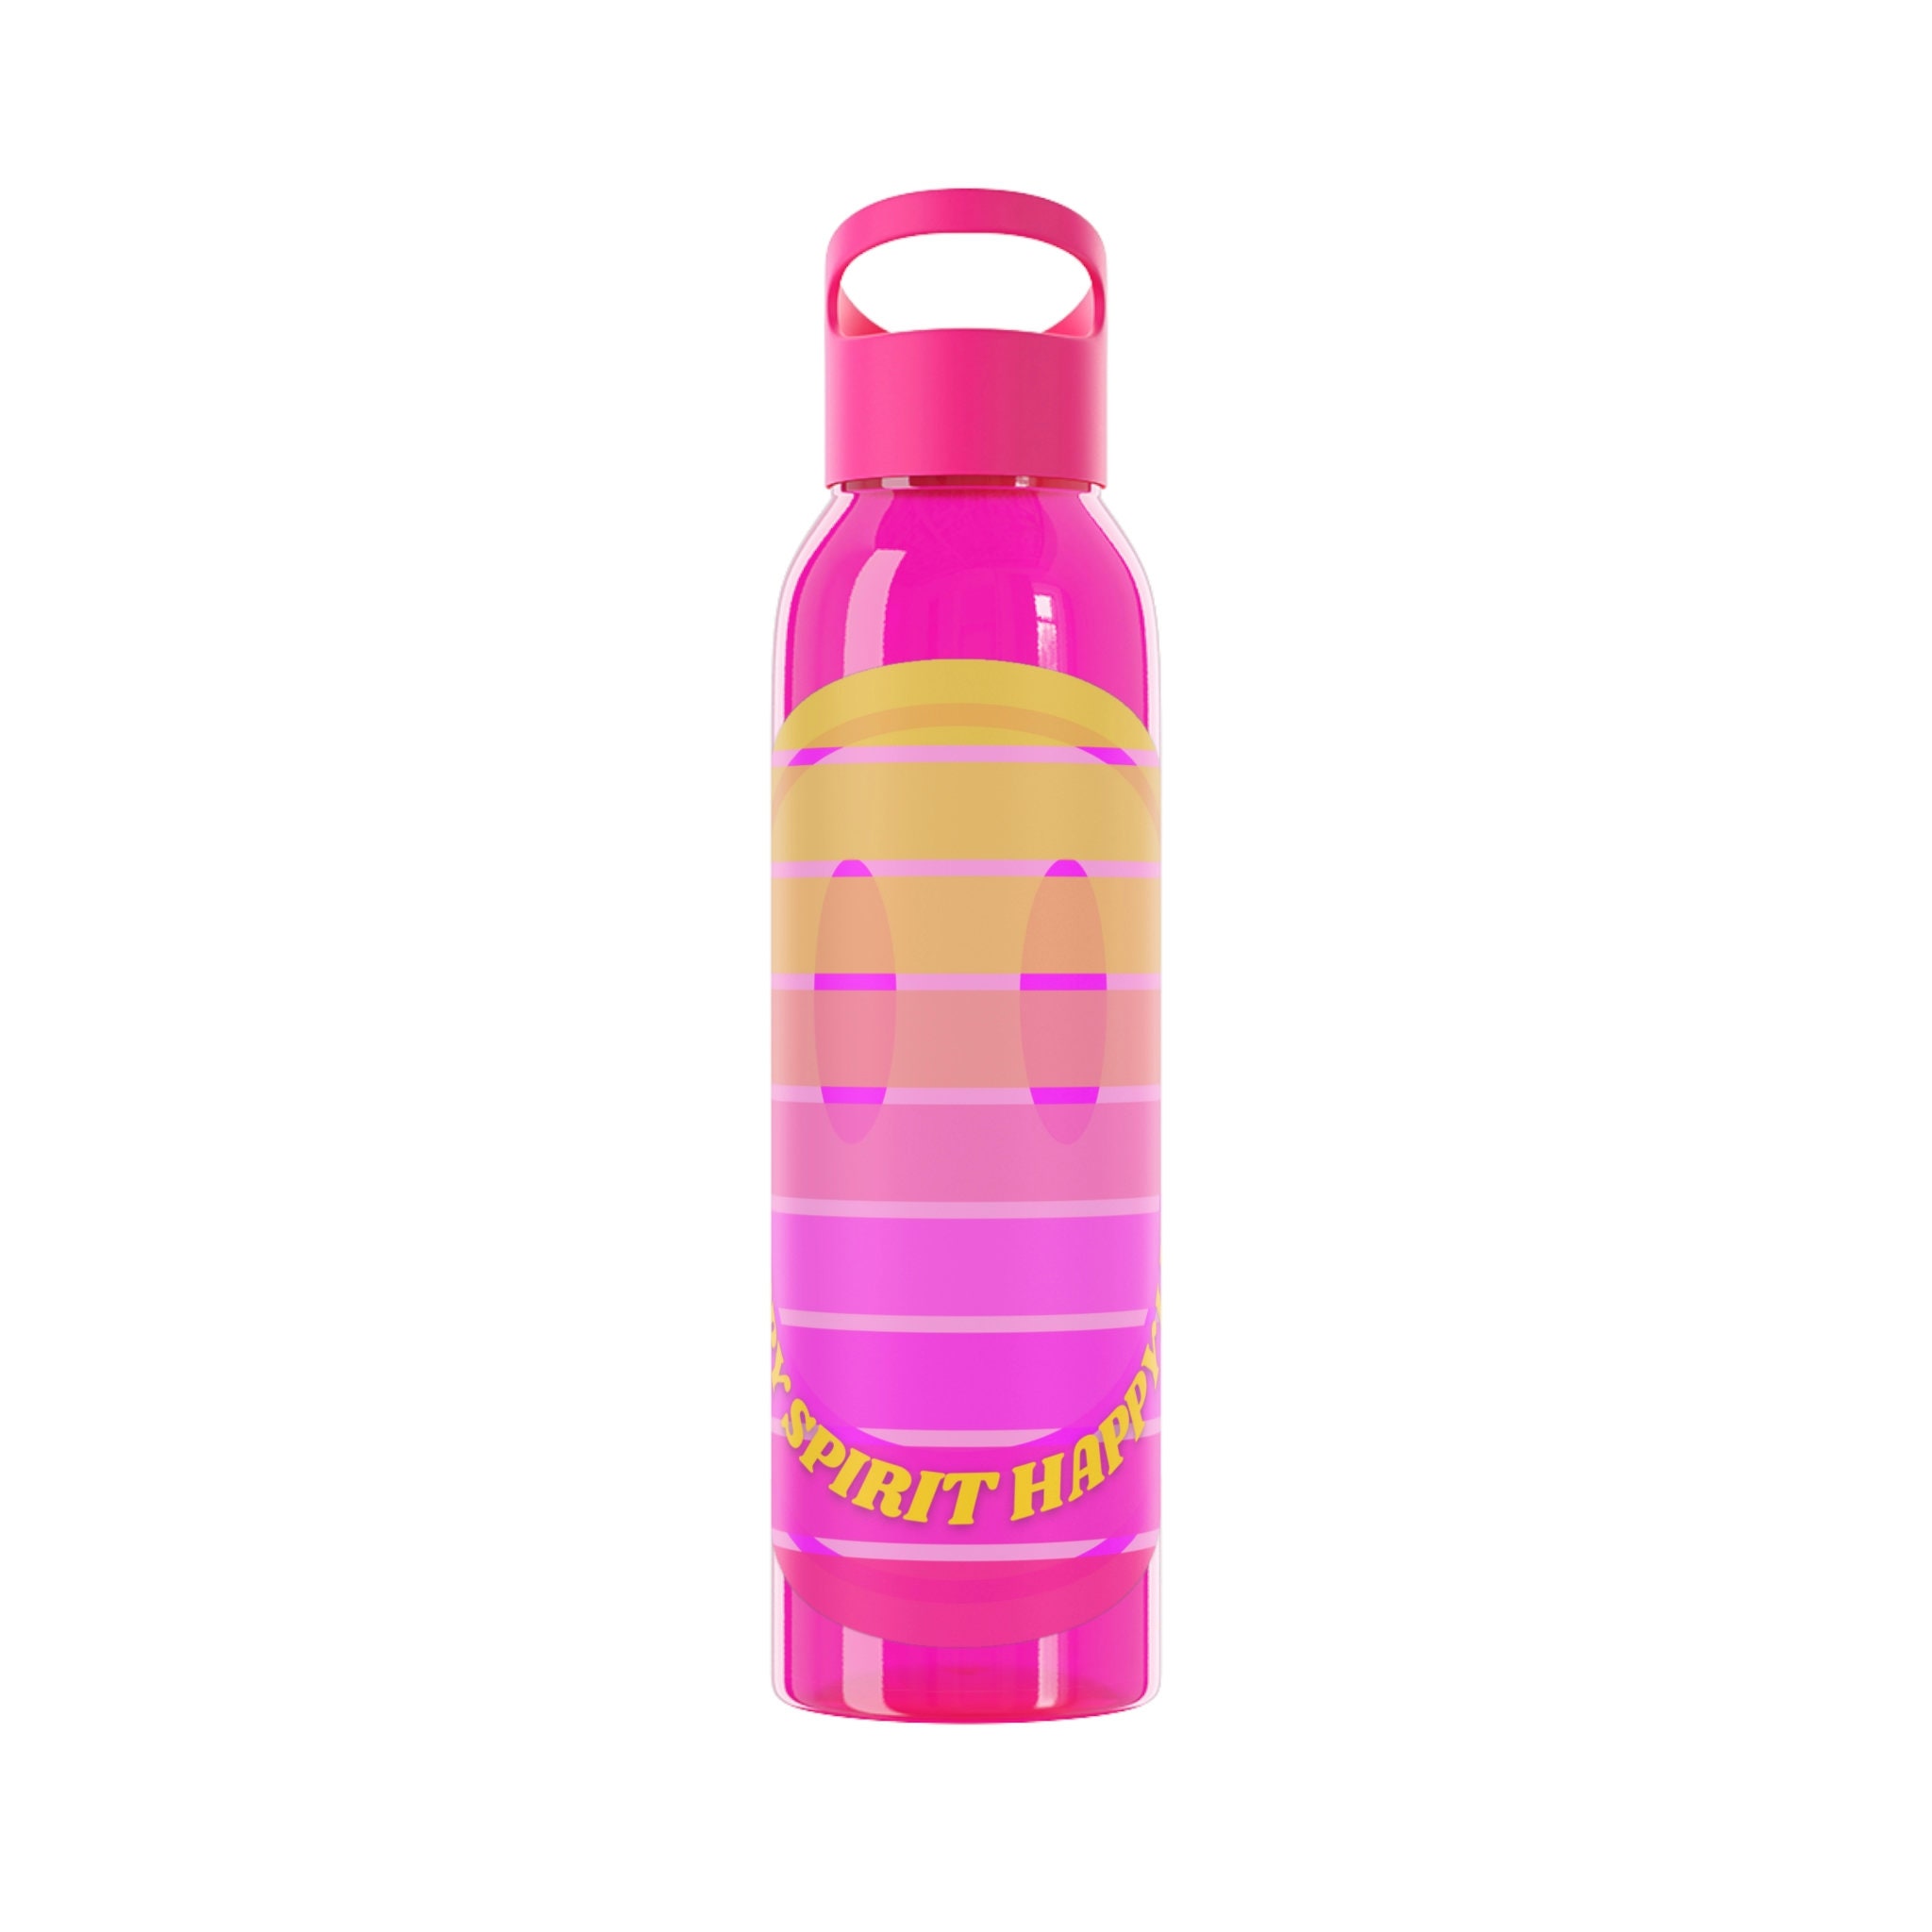 43 Preppy water bottle ideas  water bottle, preppy water bottles